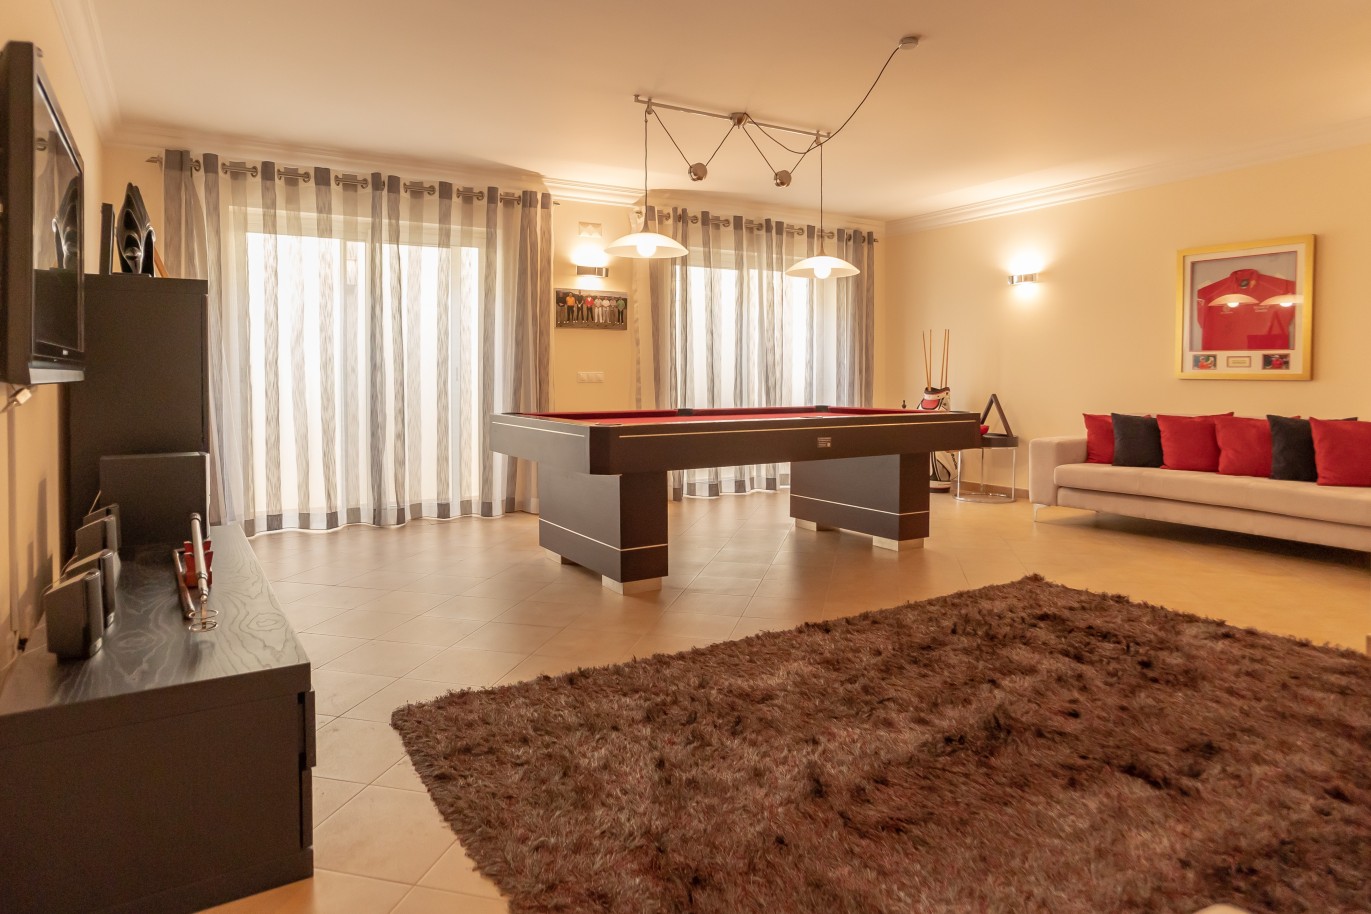 4 Bedroom Villa with pool for sale in Vila Real de Santo Antonio, Algarve_215698